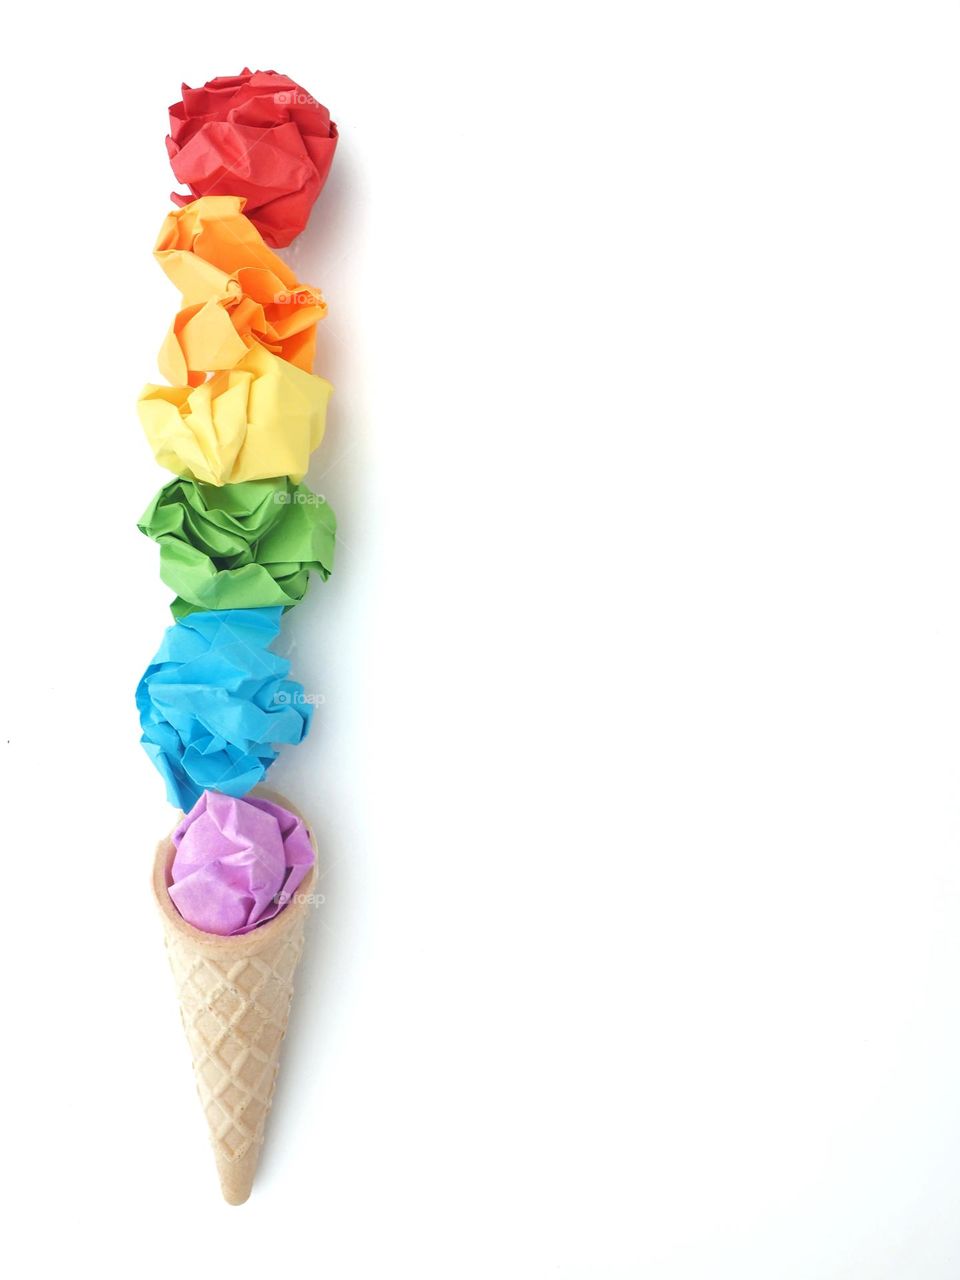 Lgbtq colors on a cone ice cream